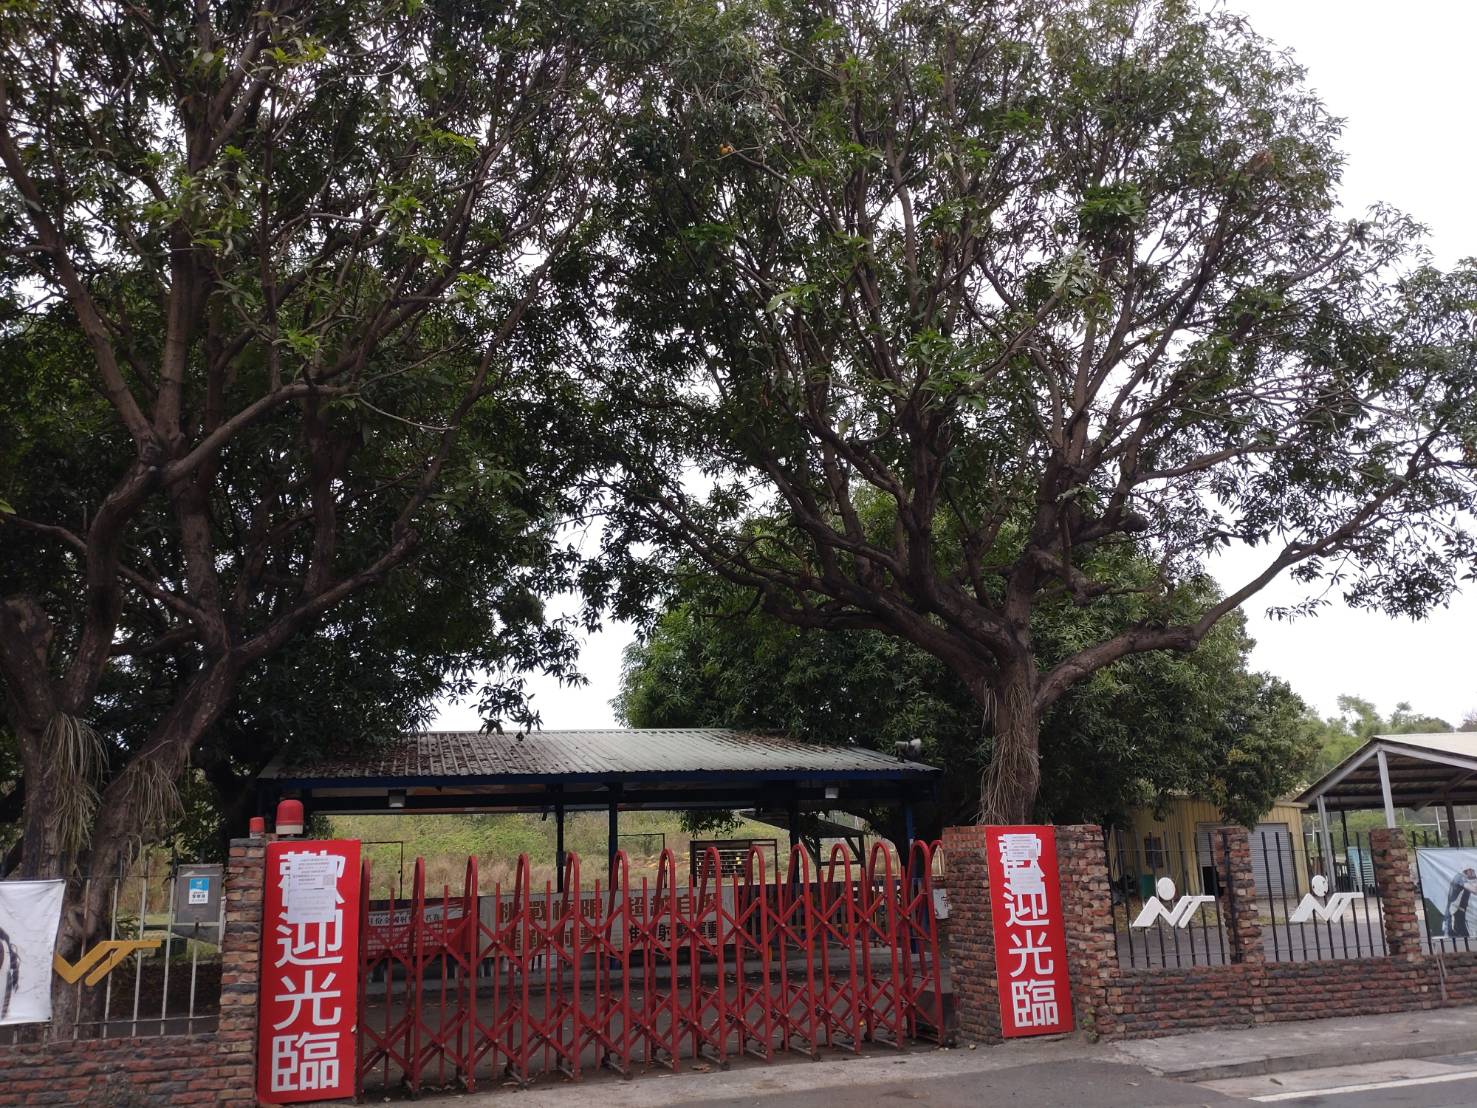 台南市体育公园射击场因竹溪整治要设置净水场，将在8月前迁移，也让体育界担心选手训练问题。记者郑惠仁／摄影